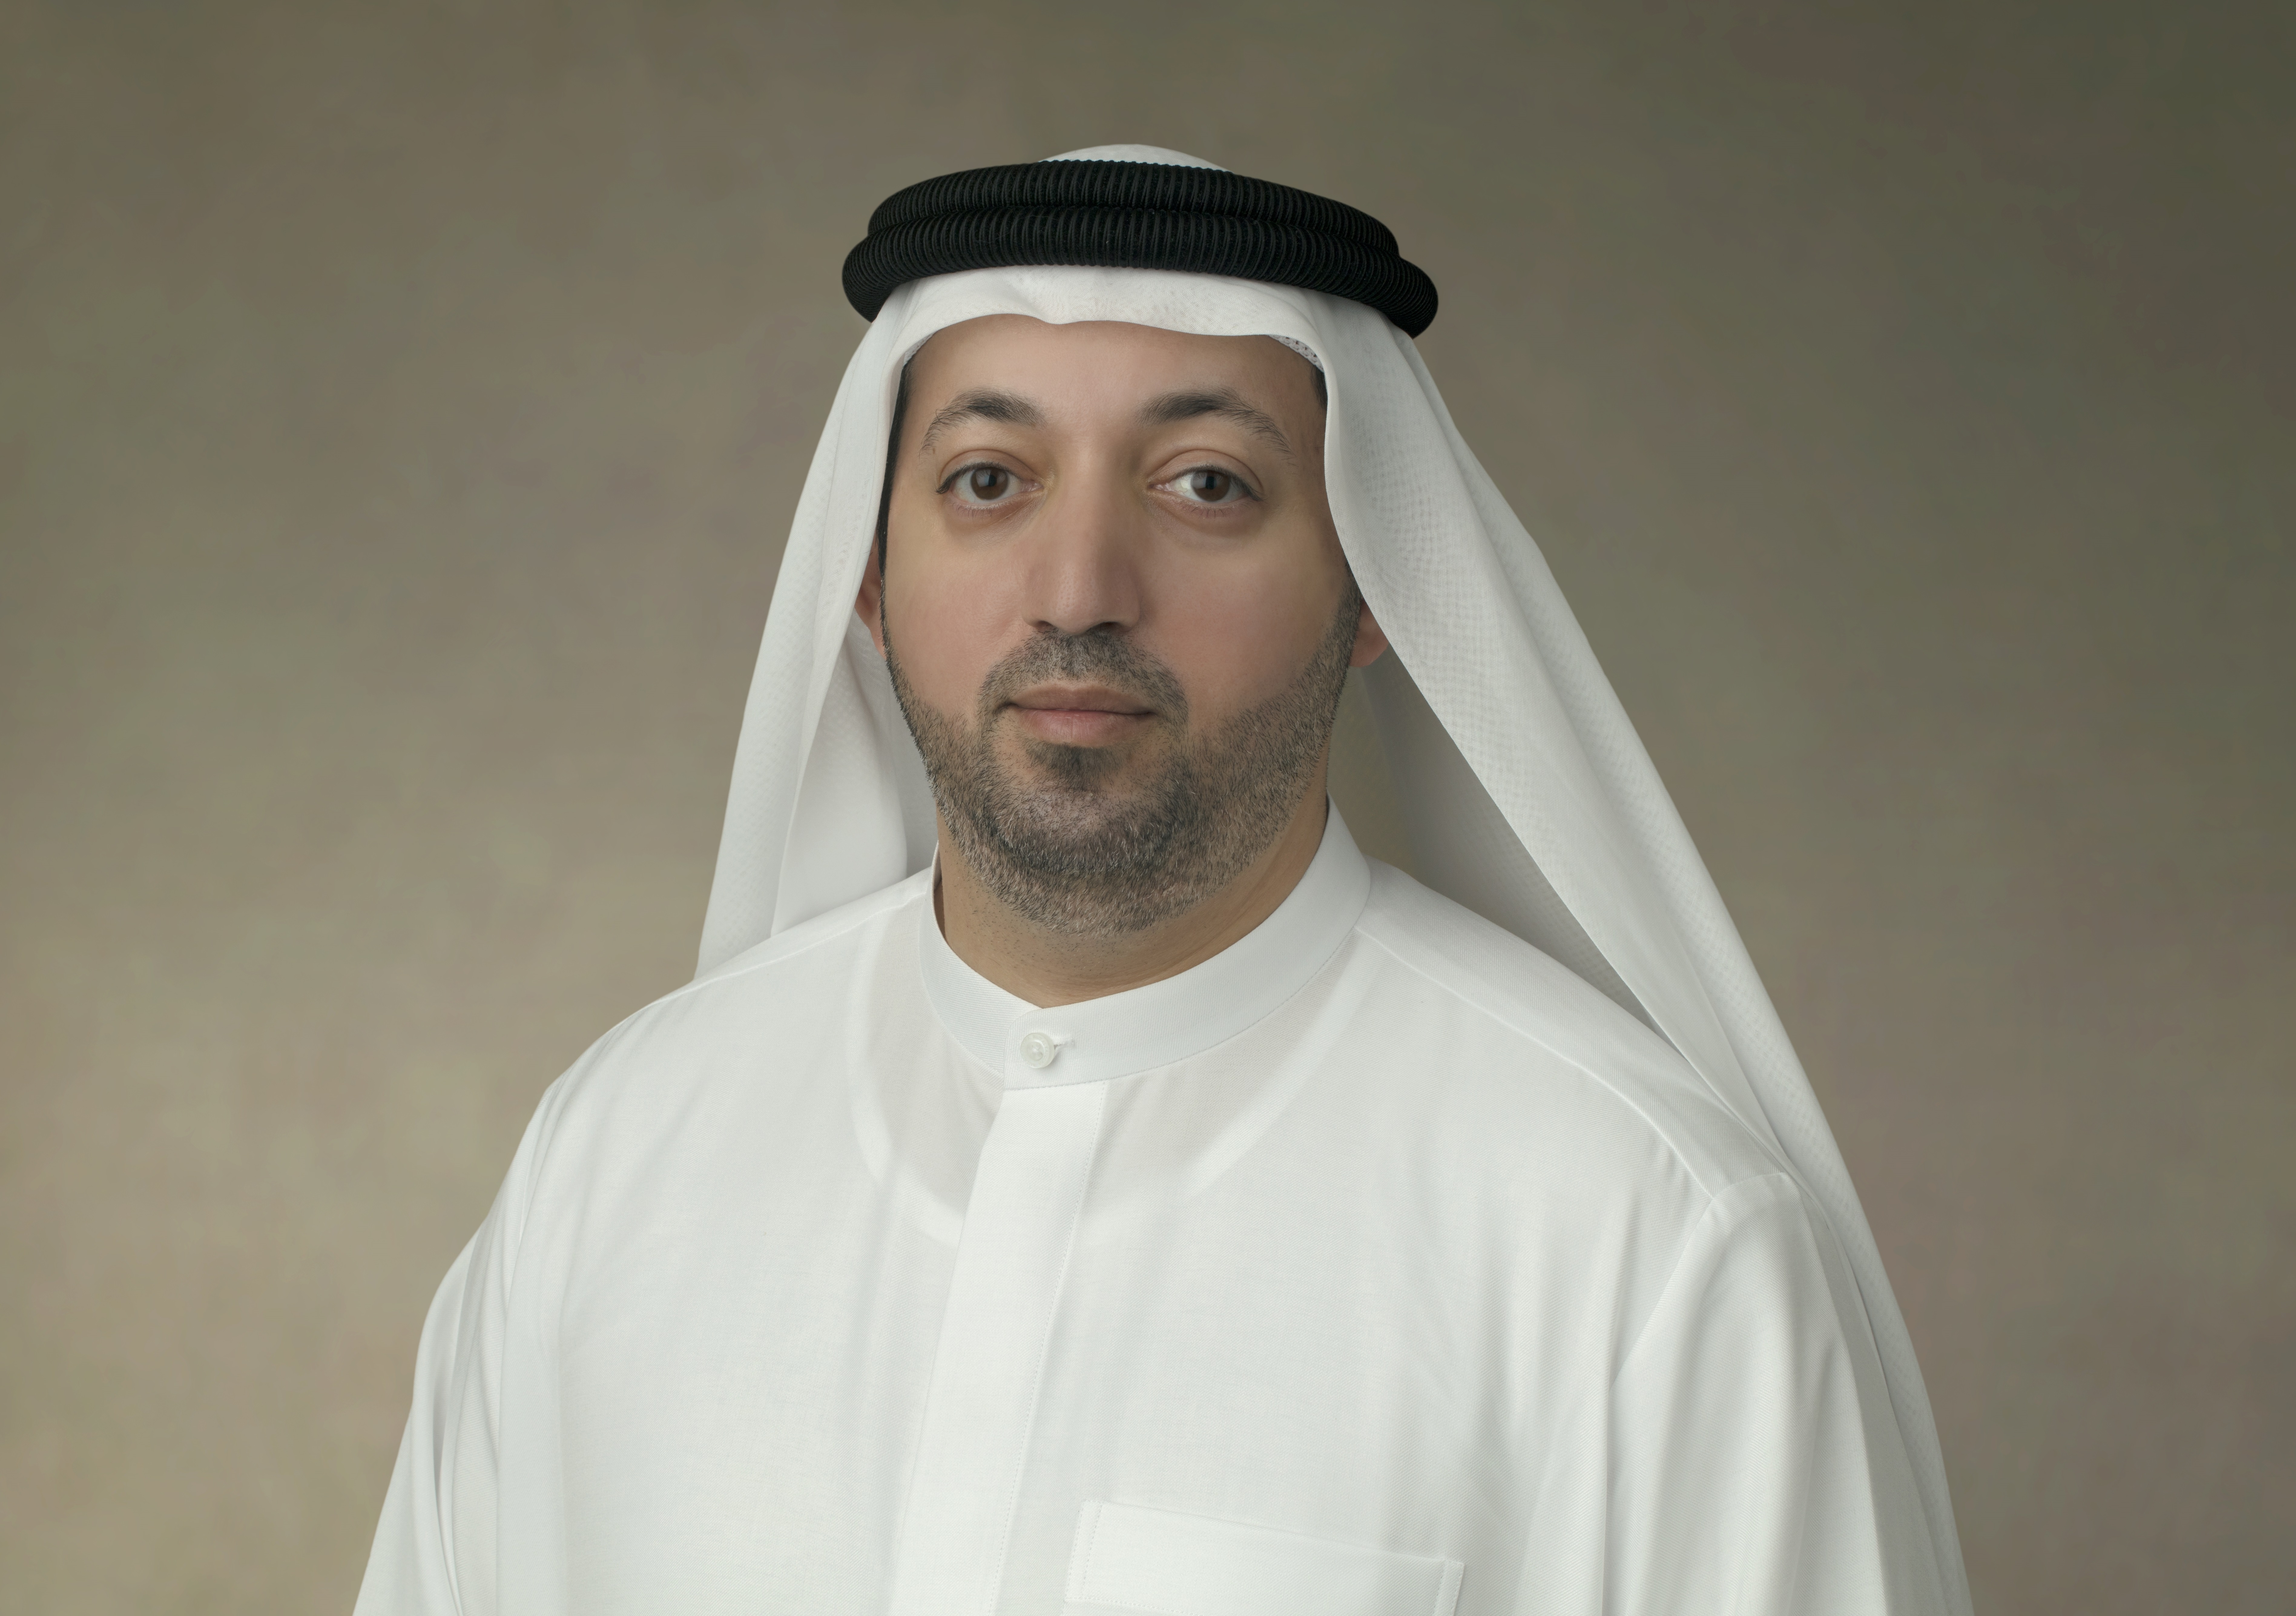 سعادة سعود سالم المزروعي: الموازنة المالية لإمارة الشارقة لعام 2021 مؤشر واضح على قوة اقتصاد الإمارة